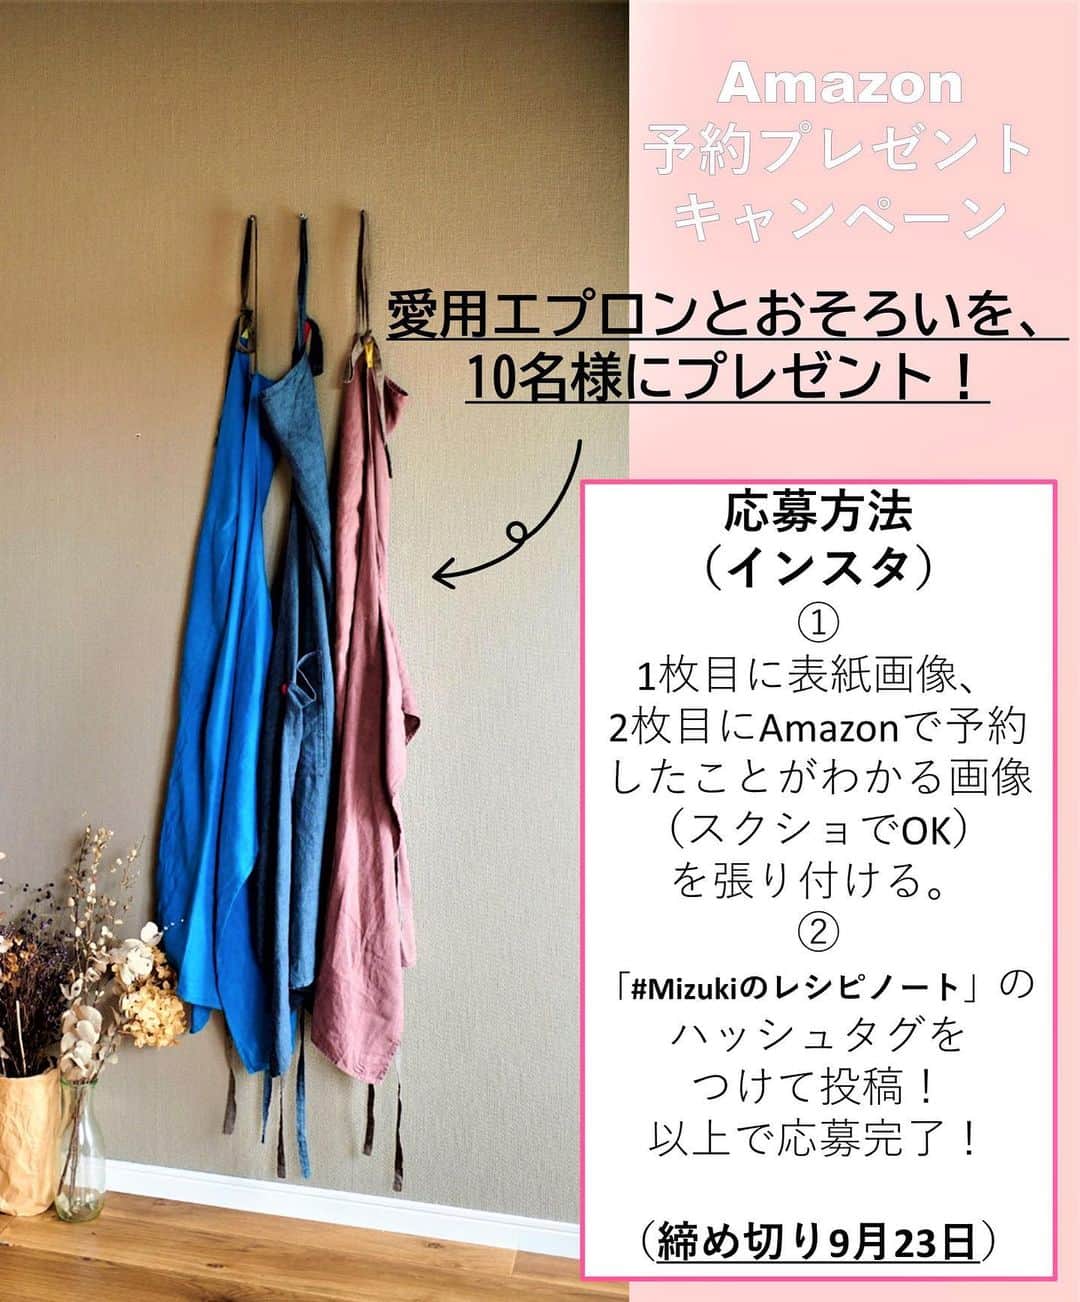 Mizuki【料理ブロガー・簡単レシピ】さんのインスタグラム写真 - (Mizuki【料理ブロガー・簡単レシピ】Instagram)「・ 【#レシピ 】ーーーーーーーーーー ひき肉と小松菜のあんかけごはん ーーーーーーーーーーーーーーーー ⁡ ⁡ ⁡ おはようございます(*^^*) ⁡ 今日ご紹介させていただくのは ささっとできるのっけごはん♩ \ ひき肉と小松菜のあんかけごはん / ⁡ しっかり味&とろみあんで がっつりごはんがすすみます♡ 野菜はしんなりするので 無理なくたっぷり食べられますよ〜♩ ⁡ 作り方は超簡単(*´艸`) 味付けもとろみ付けも 合わせ調味料で失敗なし！ フライパンひとつで完成の 簡単・時短・節約レシピです♩ ⁡ あっという間にできるので よかったらお試し下さいね(*^^*) ⁡ ⁡ ⁡ ＿＿＿＿＿＿＿＿＿＿＿＿＿＿＿＿＿＿＿＿＿ 【2〜3人分】 豚ひき肉...150g 小松菜...1束(200g) (好みで)しいたけ...2枚 ごま油...小1 ●水...200ml ●醤油・みりん・片栗粉...各大1 ●オイスターソース...大1/2 ●鶏がらスープ...小1/3 ごはん...適量 ⁡ 1.小松菜は3cm長さに切る。しいたけは薄切りにする。●は合わせておく。 2.フライパンにごま油を中火で熱してひき肉を炒める。色が変わったら小松菜としいたけも加えて更に炒める。 3.野菜がしんなりしたら●を加え、混ぜながらとろみを付け、ごはんにかける。 ￣￣￣￣￣￣￣￣￣￣￣￣￣￣￣￣￣￣￣￣￣ ⁡ ⁡ ⁡ 《ポイント》 ♦︎ひき肉の代わりに豚こまや豚バラで作ってもOK♩ ♦︎しいたけの代わりに他のきのこを加えても♩ ⁡ ⁡ ⁡ ⁡ ⁡ ⁡ ⁡ ⁡ 💬💬💬 昨日はたくさんの温かいお声を 本当にありがとうございました😭💕 とってもとっても嬉しかったです(涙) ⁡ この本の制作もいよいよ終わりが見えてきて もう少しで校了を迎えます✨ 本当に長い時間をかけてきたこともあり もはやライフワーク•••と化した本作り。 嬉しいような、寂しいような不思議な気持ちです✨ ⁡ 皆さんに支えられ、そして励まされ 色んなことを教えてもらった8年を ぎゅぎゅっと込めて仕上げたいと思います☺️ 本当にありがとうございました😭💓 ⁡ ⁡ ⁡ ⁡ ⁡ ⁡ ⁡ \ 新刊予約開始しました /(9月24日発売) ⁡ 🔹🔹🔹🔹🔹🔹🔹🔹🔹🔹🔹🔹 今日のごはんこれに決まり！ #Mizukiのレシピノート 決定版 500品 🔹🔹🔹🔹🔹🔹🔹🔹🔹🔹🔹🔹 ⁡ 総レシピ6000点の中からレシピを厳選！ まさかの【500レシピ掲載】しました⭐️ (もはや辞典...) ⁡ 肉や魚のメインおかずはもちろん 副菜、丼、麺、スープ、お菓子 ハレの日のレシピ、鍋のレシピまで 全てこの一冊で完結！！ ⁡ ⁡ 🎁新刊予約でエプロンが当たる🎁 プレゼントキャンペーン実施中 ￣￣￣￣￣￣￣￣￣￣￣￣￣￣￣￣￣￣￣￣￣ 【応募方法】 ❶1枚目に表紙画像 2枚目にAmazonで予約したことがわかる画像 (どちらもスクショでOK)を貼りつける。 ❷ハッシュタグ【#Mizukiのレシピノート 】 をつけて投稿！ ￣￣￣￣￣￣￣￣￣￣￣￣￣￣￣￣￣￣￣￣￣￣ ⁡ ⁡ ⁡ ⁡ ⁡ ＿＿＿＿＿＿＿＿＿＿＿＿＿＿＿＿ 🟥YouTube 料理動画配信中🟥 ￣￣￣￣￣￣￣￣￣￣￣￣￣￣￣￣ 料理とお菓子の簡単レシピを ご紹介しています☺️💓 ⁡ 【奇跡のキッチン】で検索🔍 (ハイライトからも飛べます✨) ￣￣￣￣￣￣￣￣￣￣￣￣￣￣￣￣ ⁡ ⁡ ⁡ ＿＿＿＿＿＿＿＿＿＿＿＿＿＿＿＿ 🔶🔶recipe book🔶🔶 ￣￣￣￣￣￣￣￣￣￣￣￣￣￣￣￣ ホケミレシピの決定版♩ \はじめてでも失敗しない/ 📙#ホットケーキミックスのお菓子 ⁡ NHKまる得マガジンテキスト☆ #ホットケーキミックス で ⁡ 📗絶品おやつ&意外なランチ ⁡ しんどくない献立、考えました♩ \𝟣𝟧分でいただきます/ 📕#Mizukiの2品献立 ⁡ 和食をもっとカジュアルに♩ \毎日のごはんがラクになる/ 📘#Mizukiの今どき和食  ＿＿＿＿＿＿＿＿＿＿＿＿＿＿＿＿＿ ⁡ ⁡ ⁡ ⁡ #ひき肉と小松菜のあんかけごはんm #丼 #小松菜 #ひき肉 #あんかけ #mizuki #簡単レシピ #時短レシピ #節約レシピ #料理 #料理初心者  #時短ごはん #節約ごはん #フーディーテーブル #おうちごはん #デリスタグラマー #おうちごはんlover #料理好きな人と繋がりたい #写真好きな人と繋がりたい #foodpick#cooking#recipe」8月29日 8時58分 - mizuki_31cafe